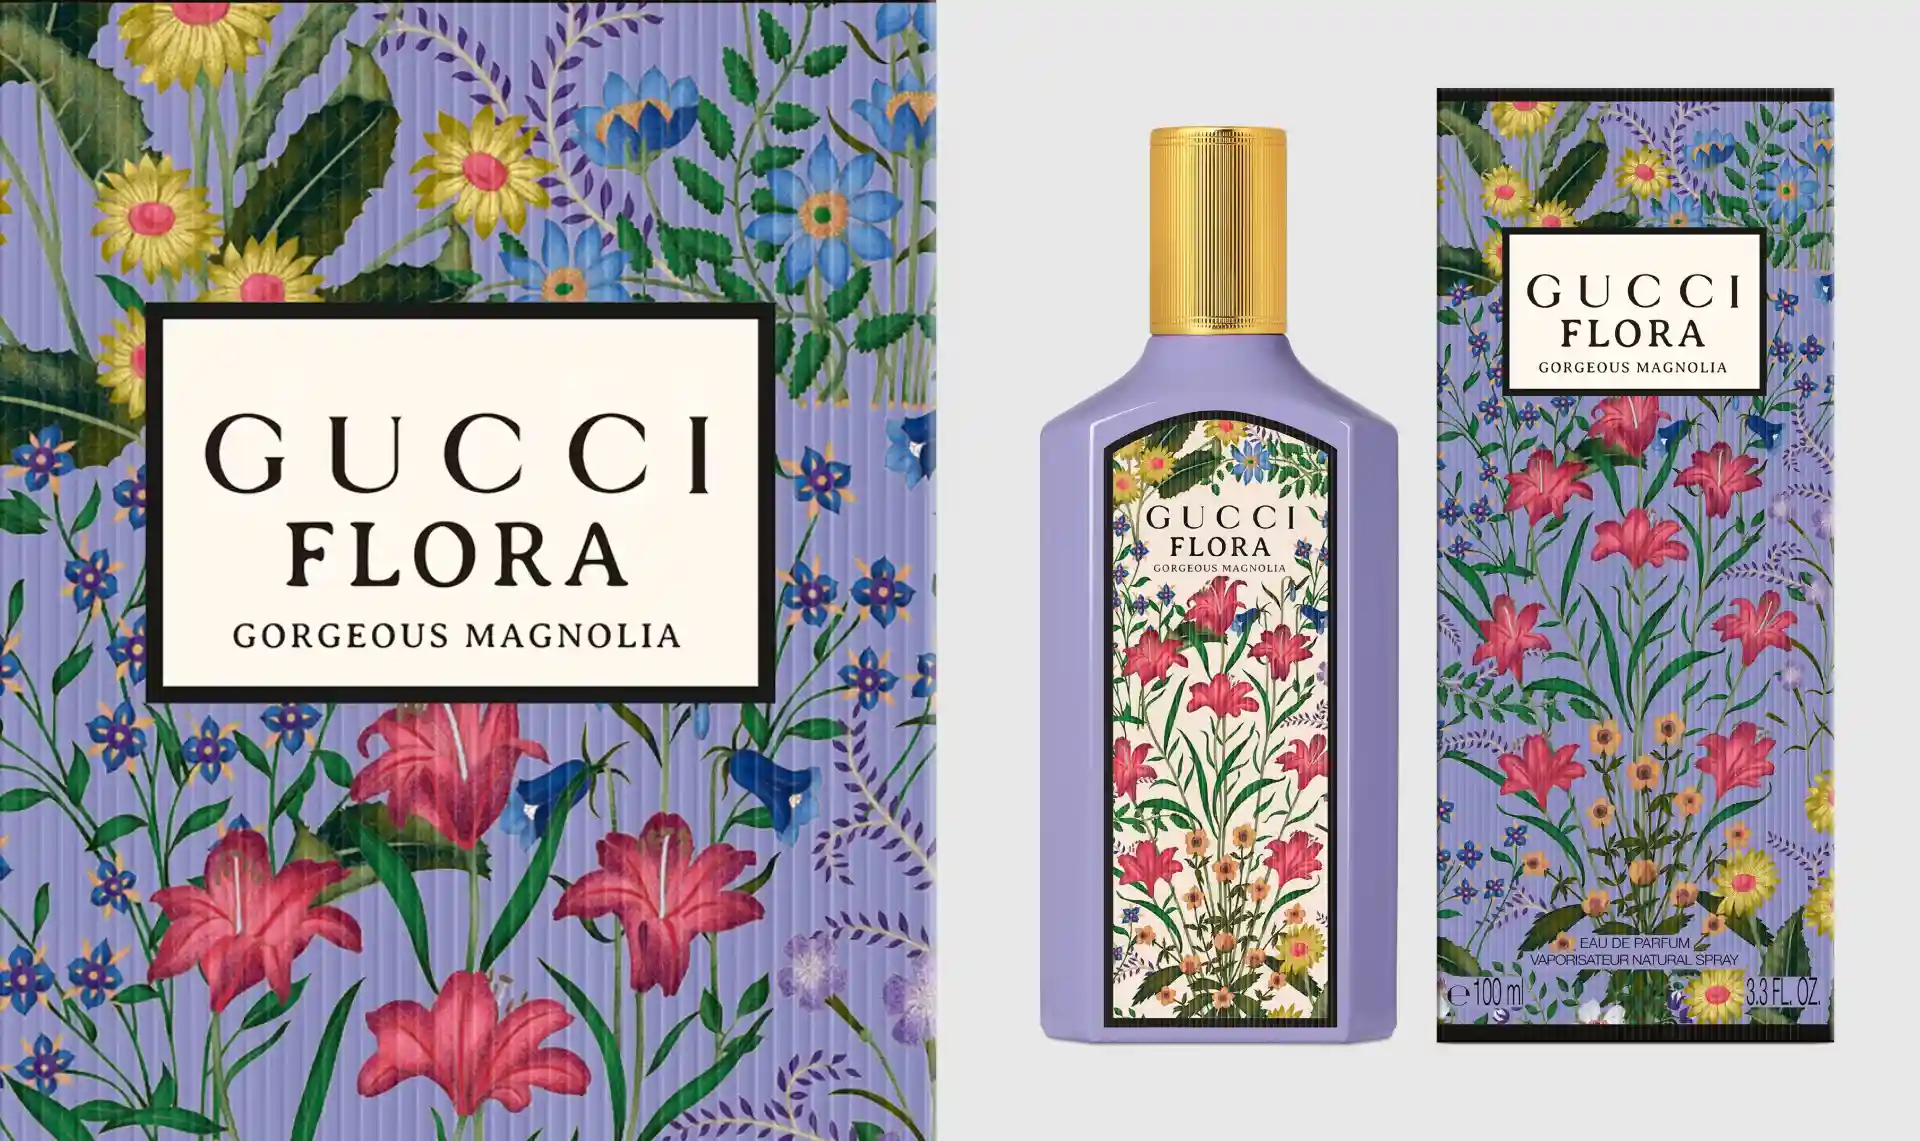 ¿Cómo es el nuevo perfume Gucci Flora Gorgeous Magnolia?